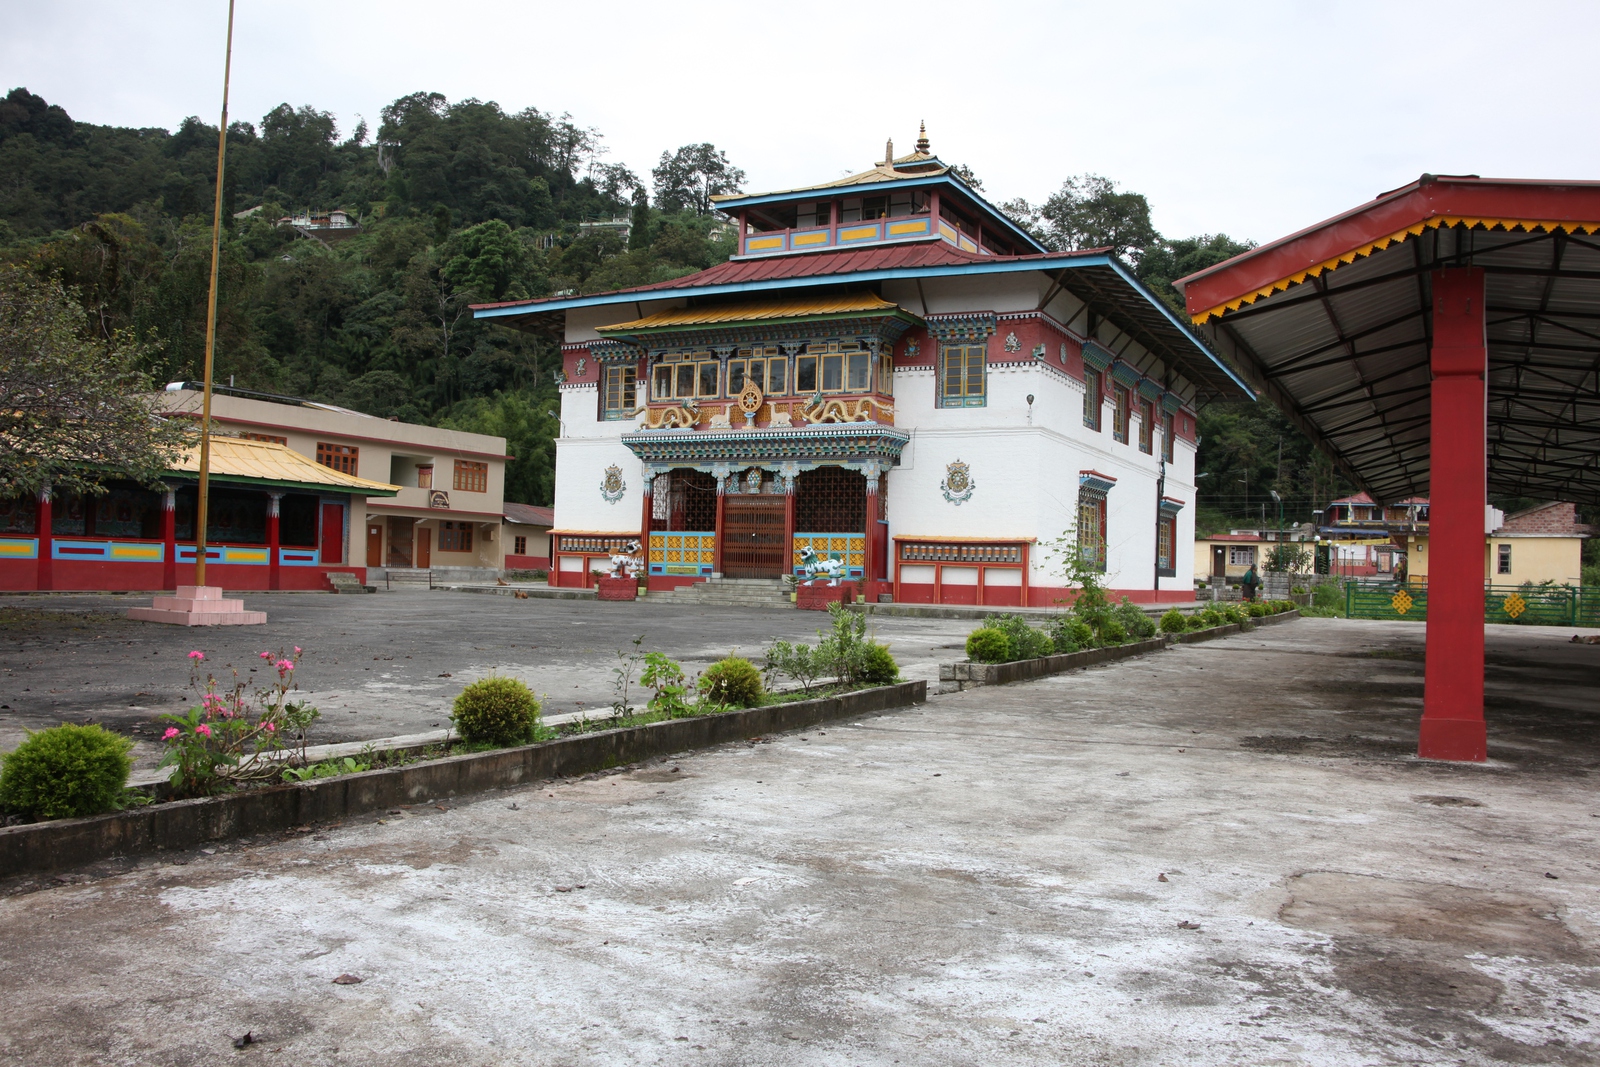 Phodong: Phodong Monastery